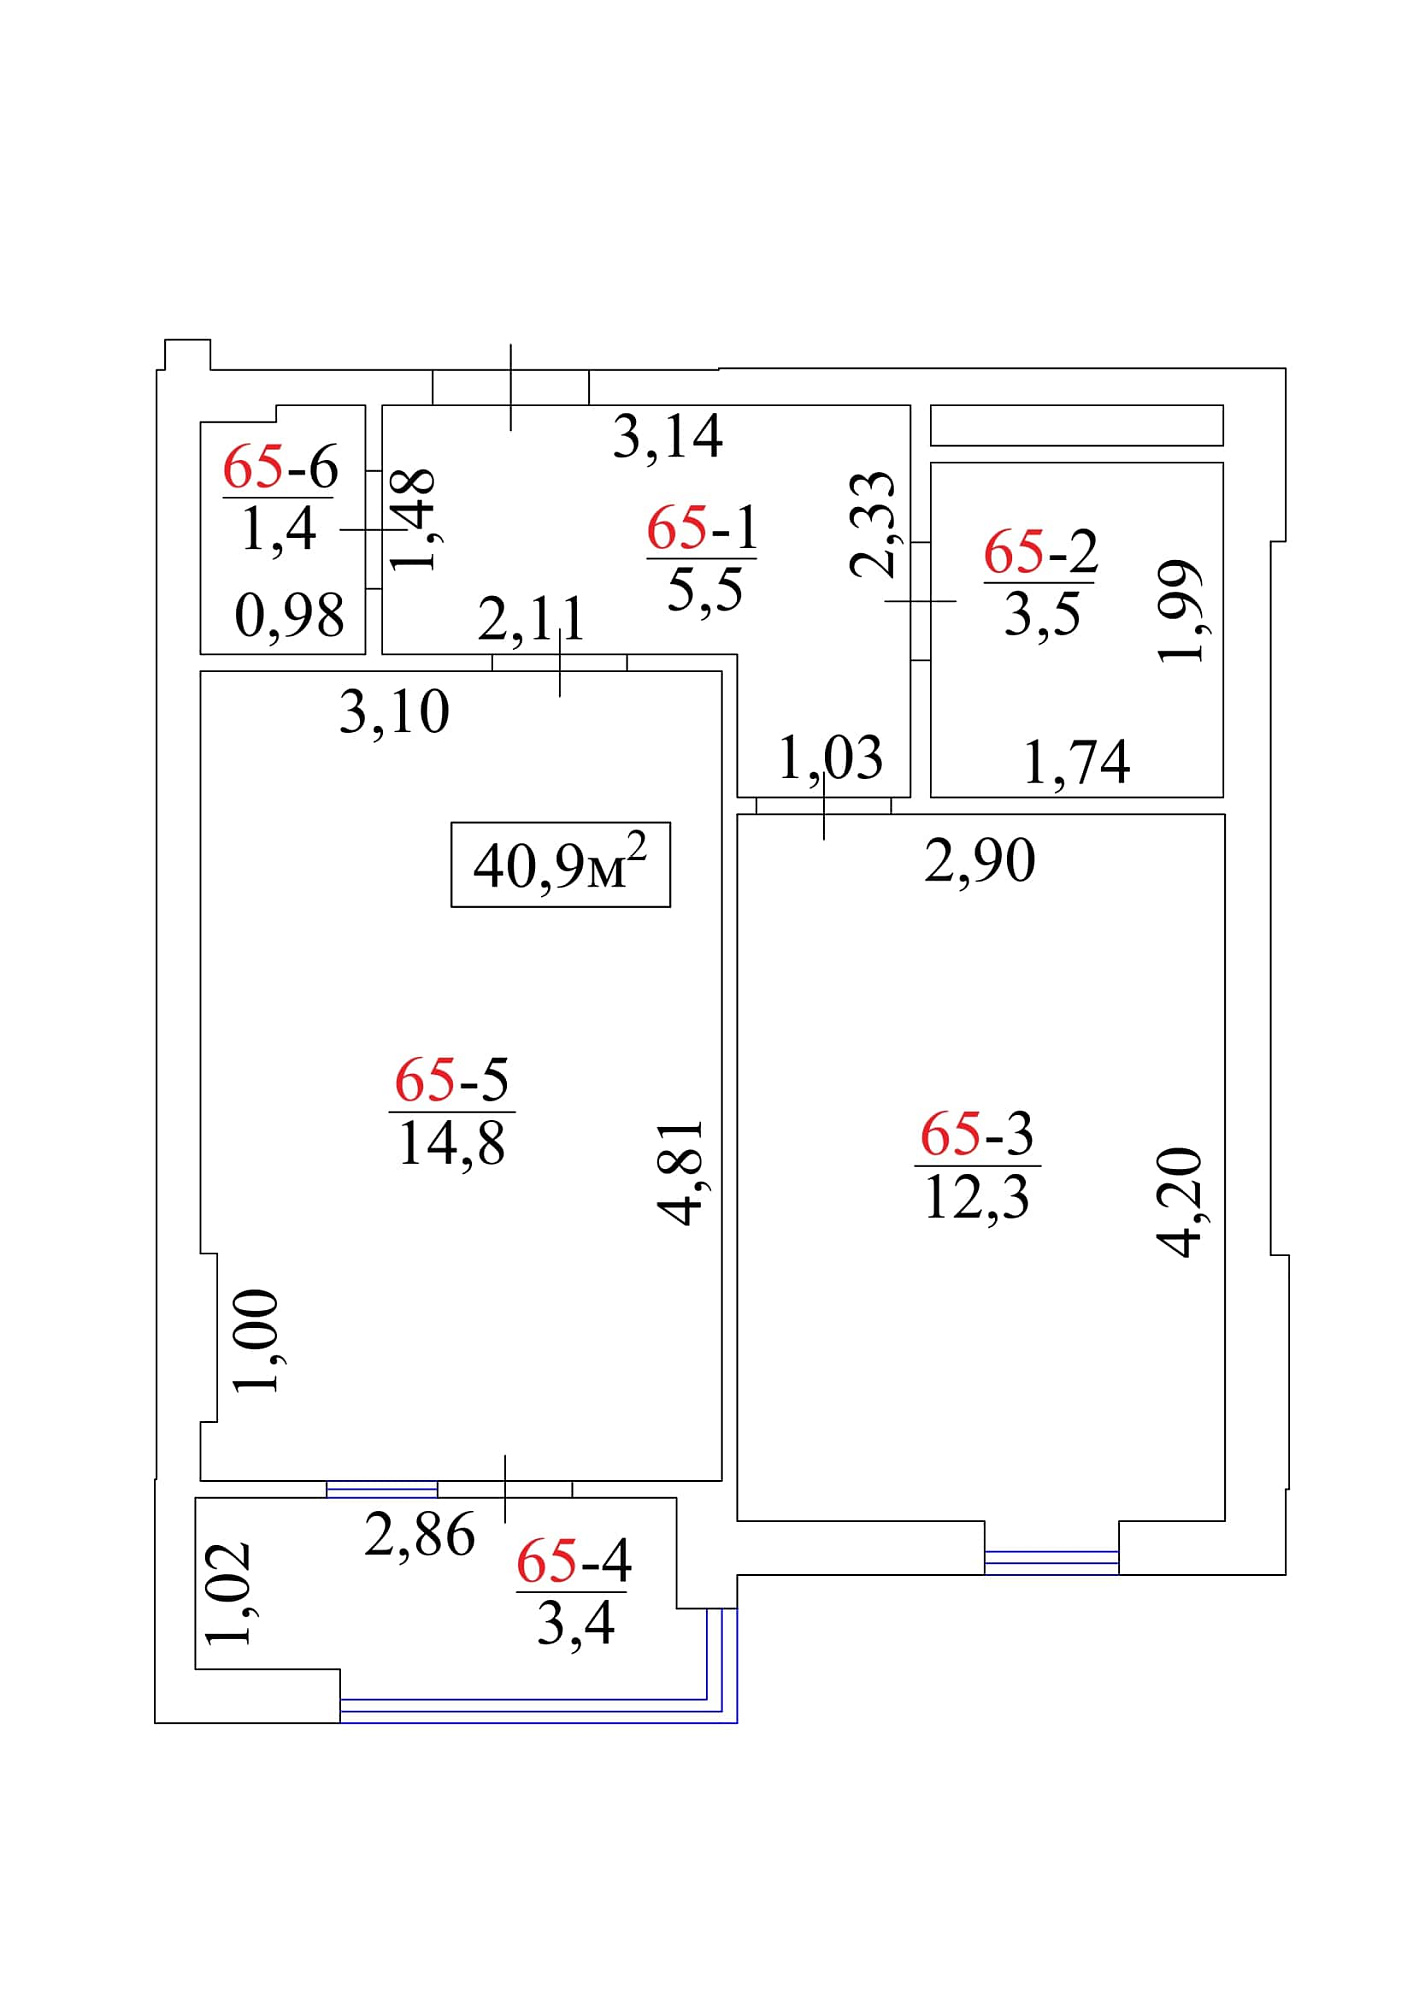 Планировка 1-к квартира площей 40.9м2, AB-01-07/00061.